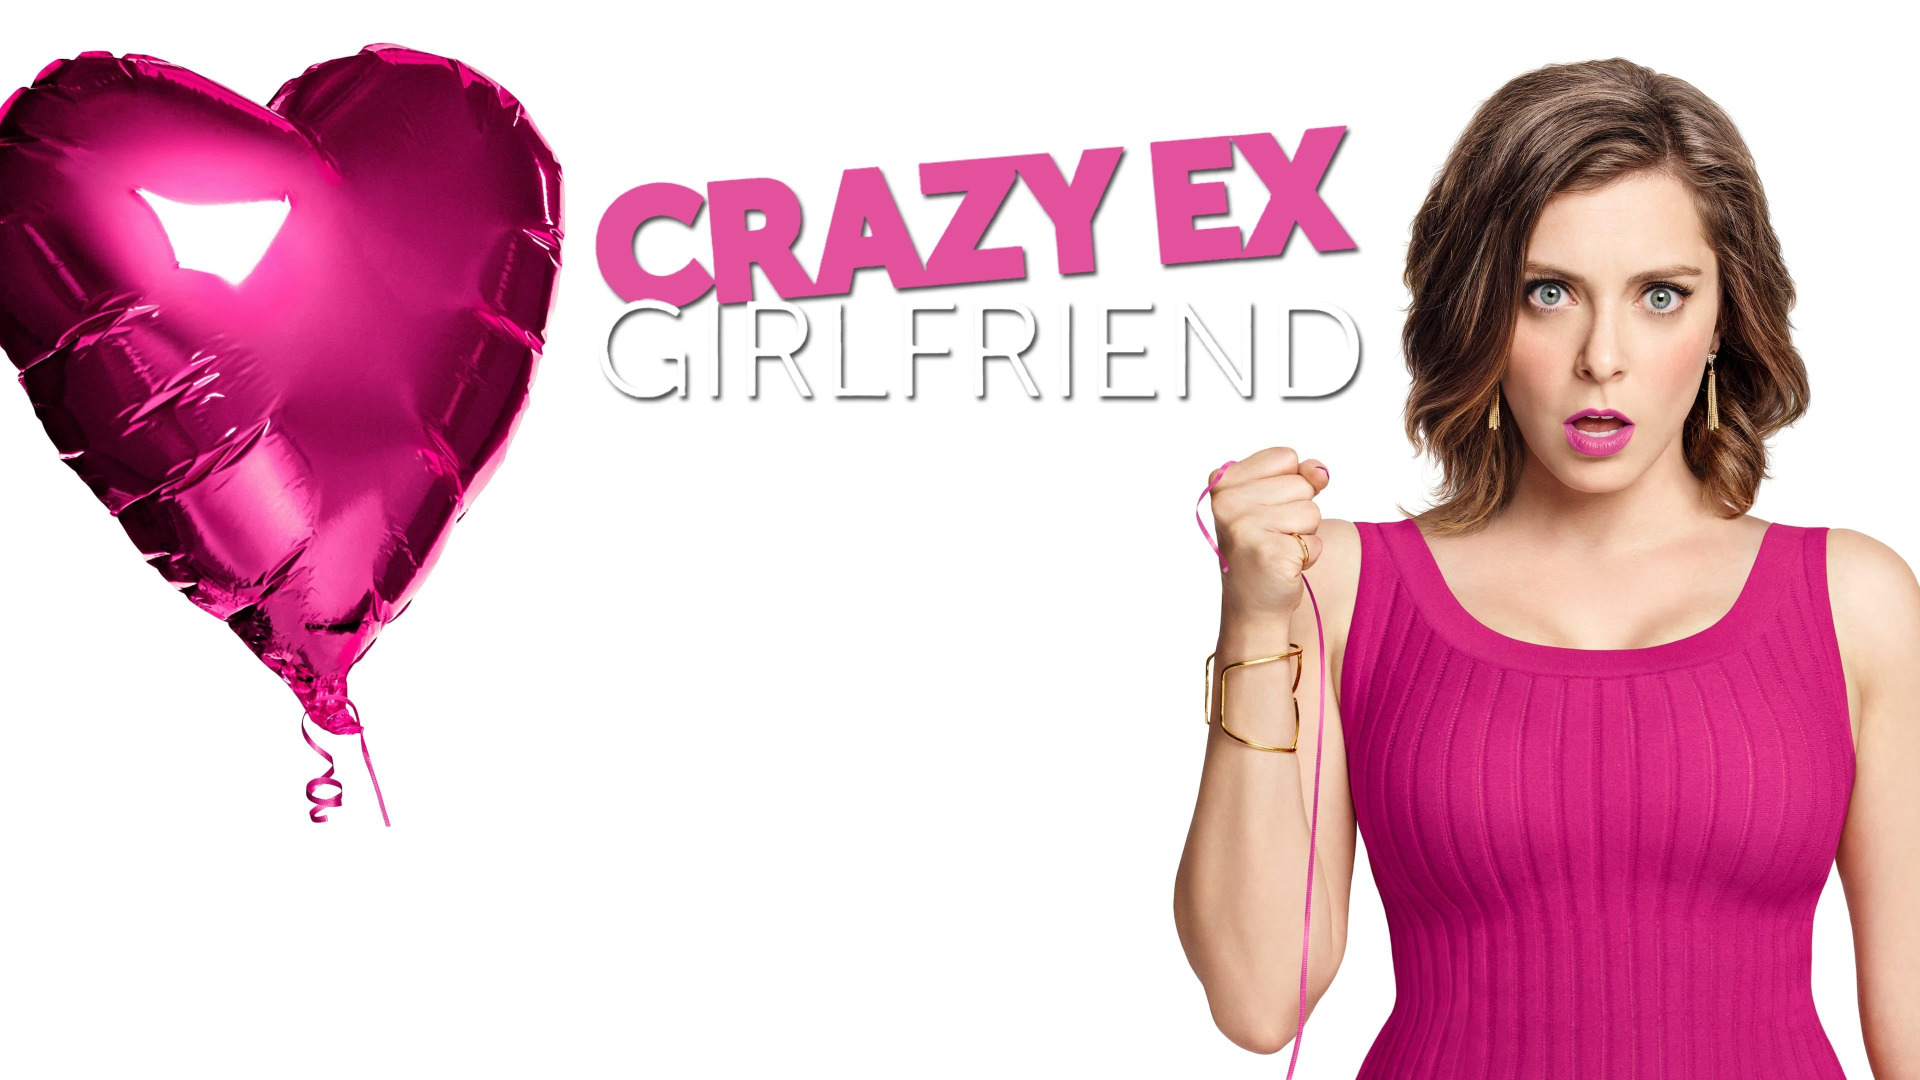 Show Crazy Ex-Girlfriend